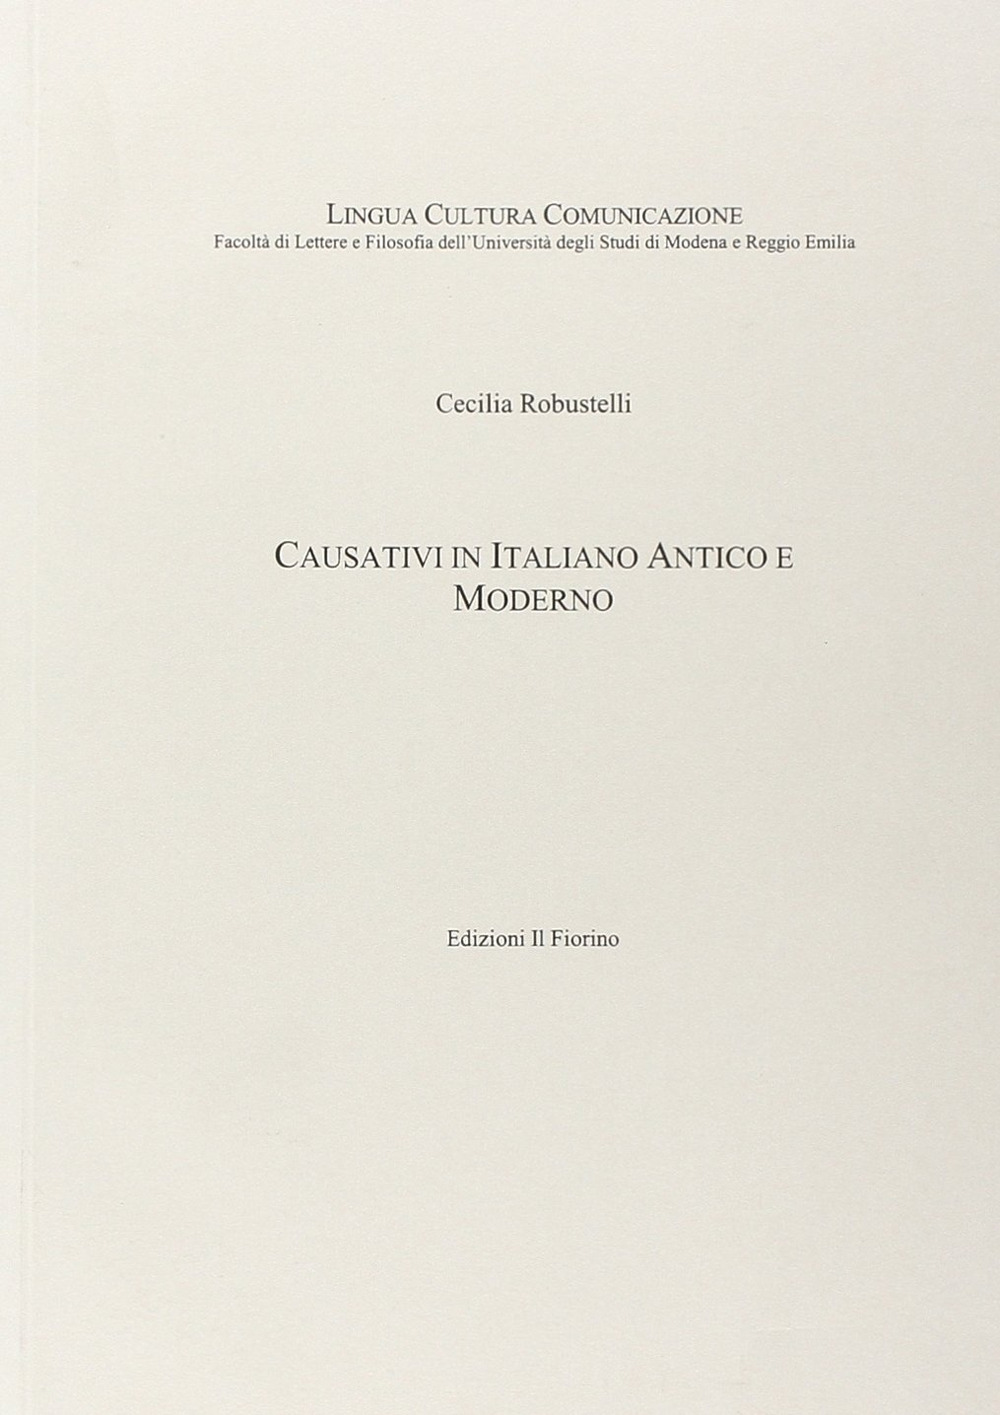 Causativi in italiano antico e moderno